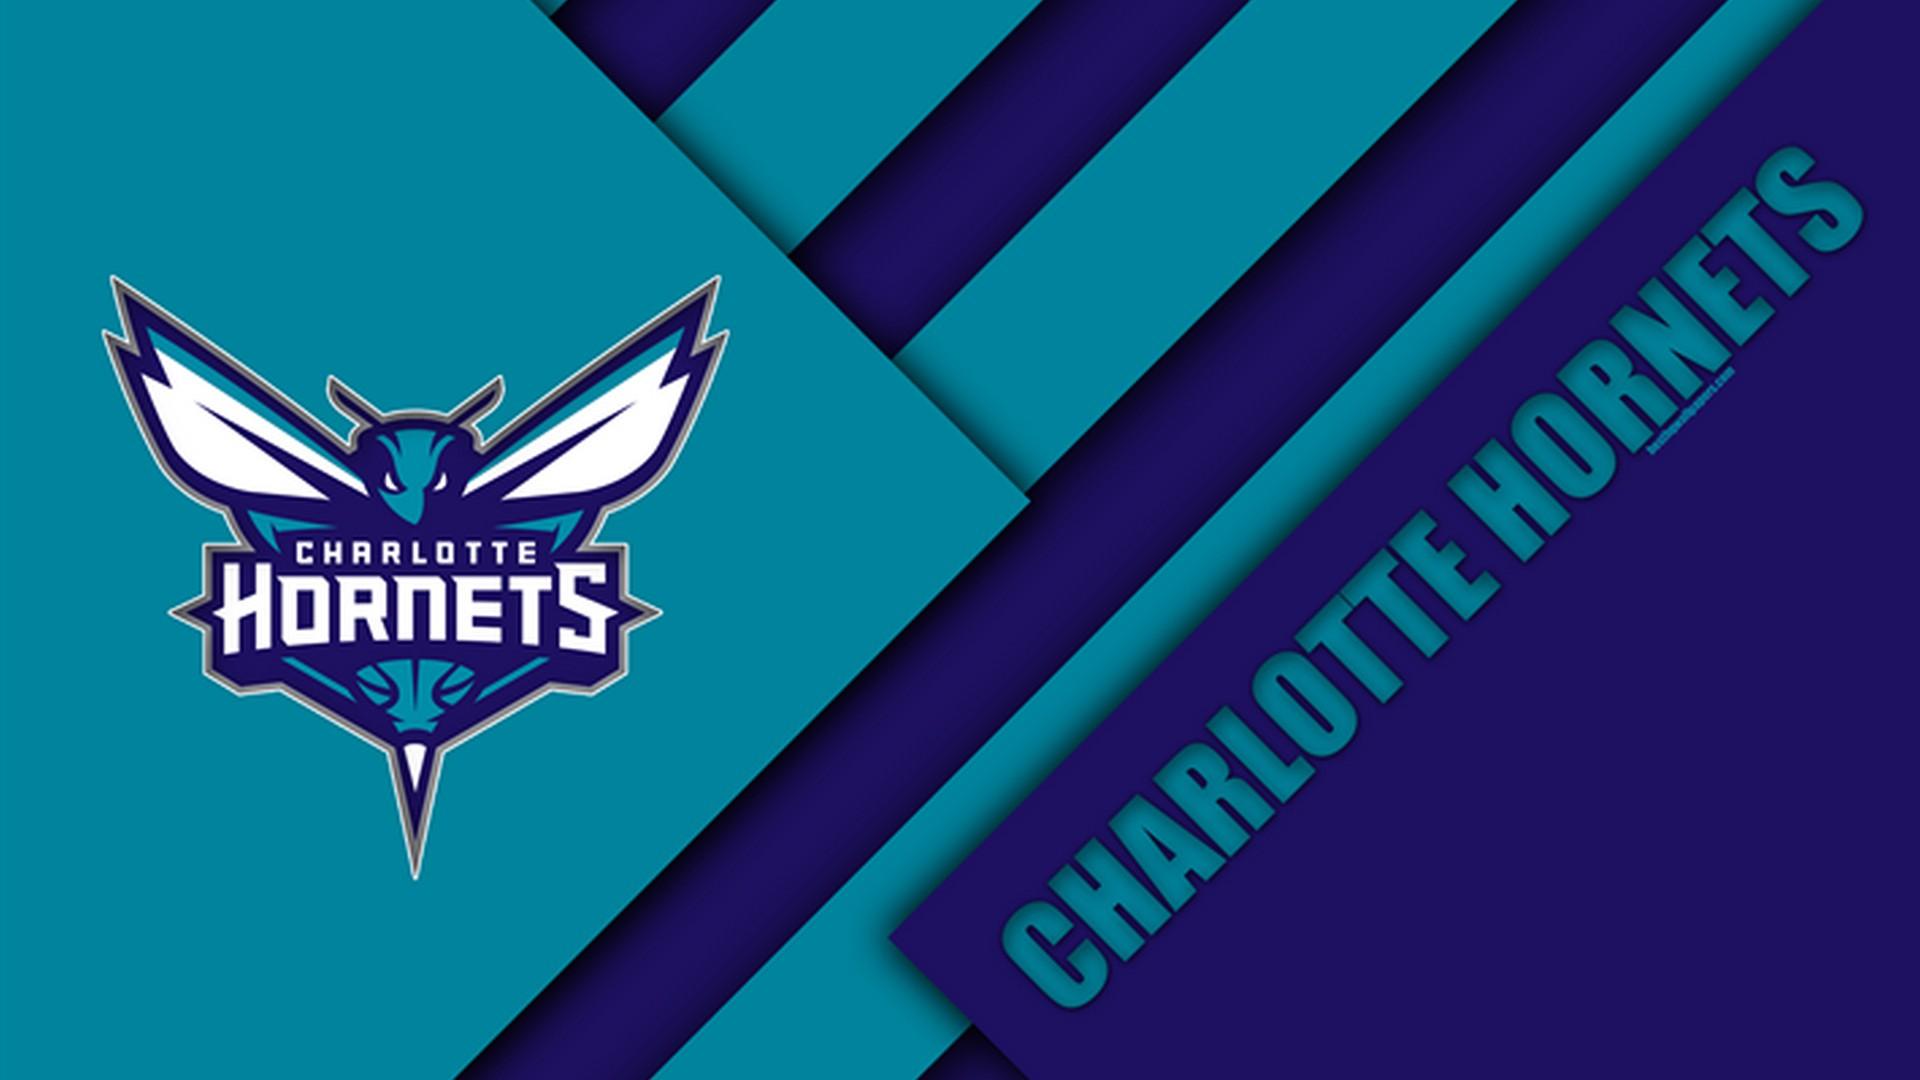 Charlotte Hornets Background Wallpaper 33425 - Baltana